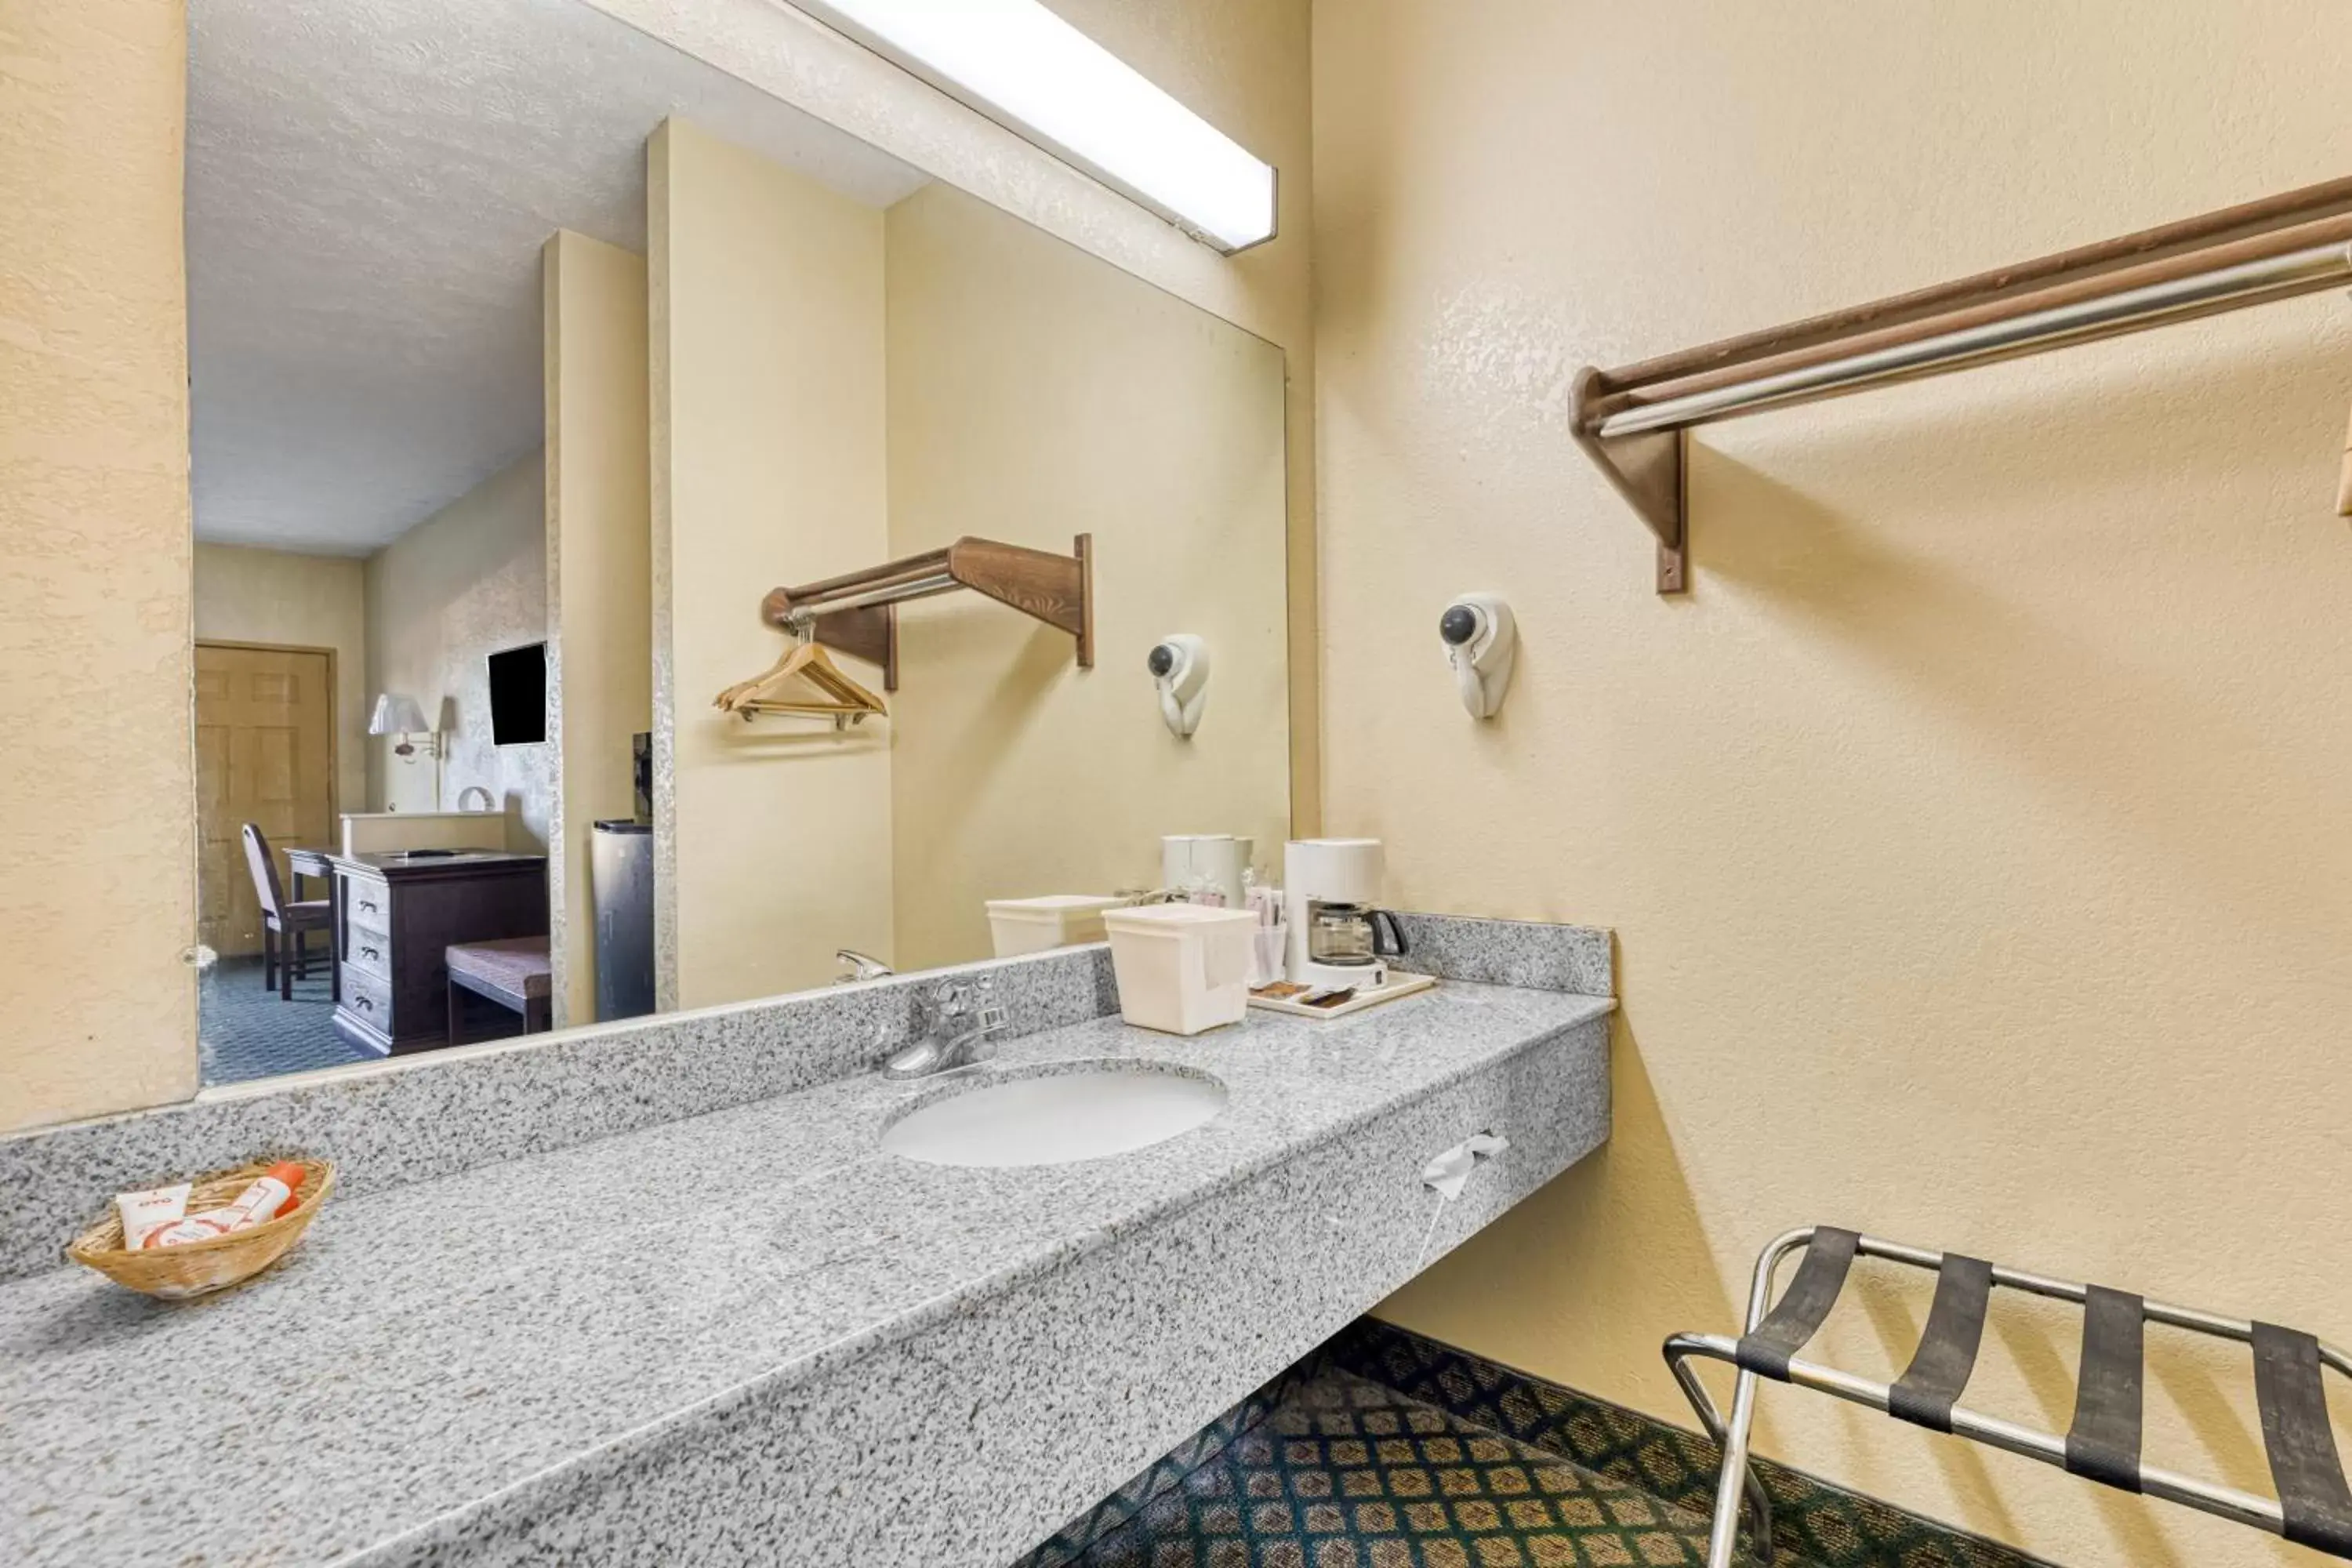 Area and facilities, Bathroom in OYO Hotel Grenada West